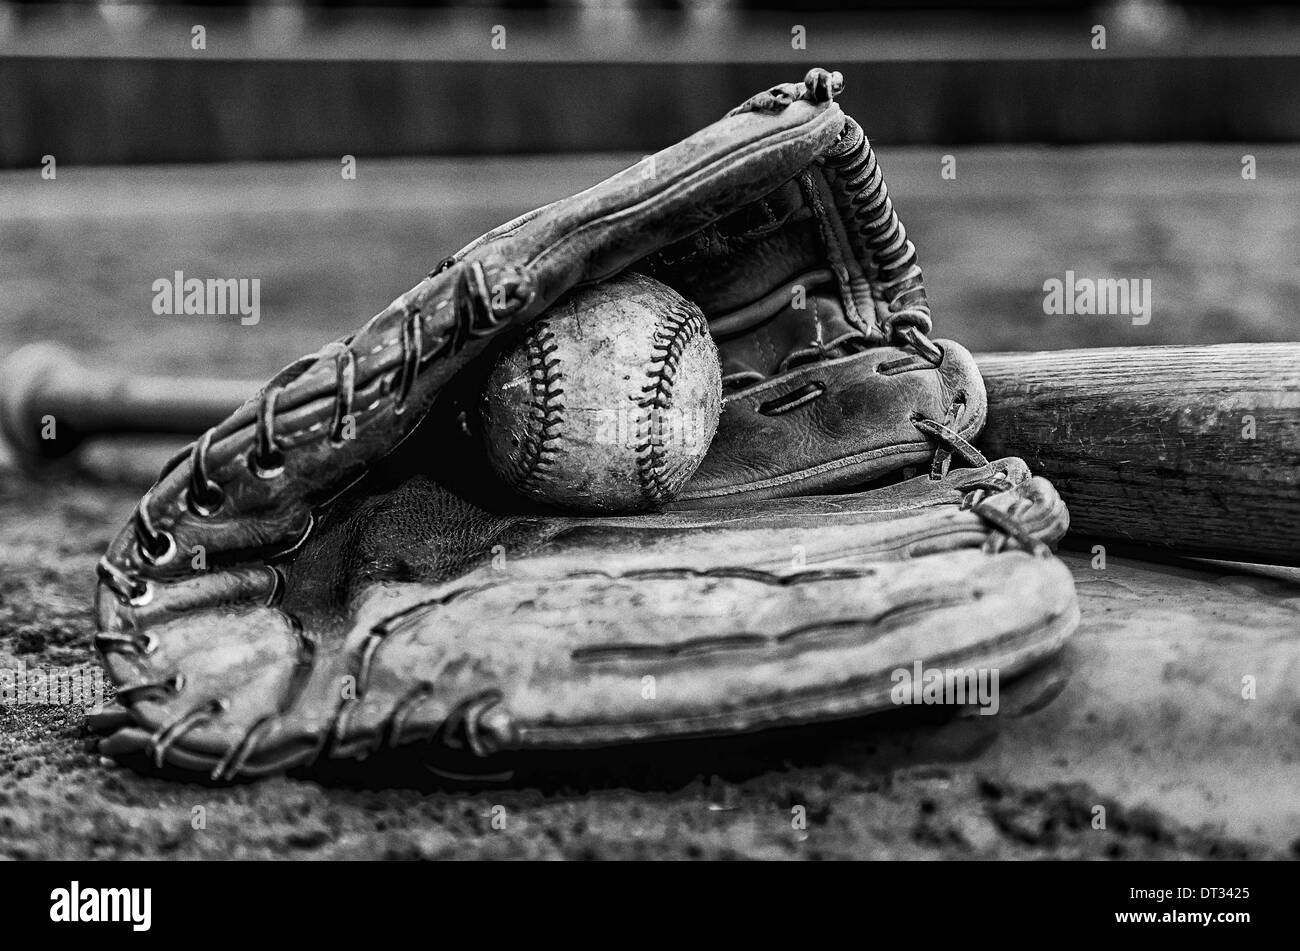 Il baseball i giorni di gloria con la palla nel guanto e bat su base sul campo. Immagine monocromatica con parete fuori campo lato in background. Foto Stock